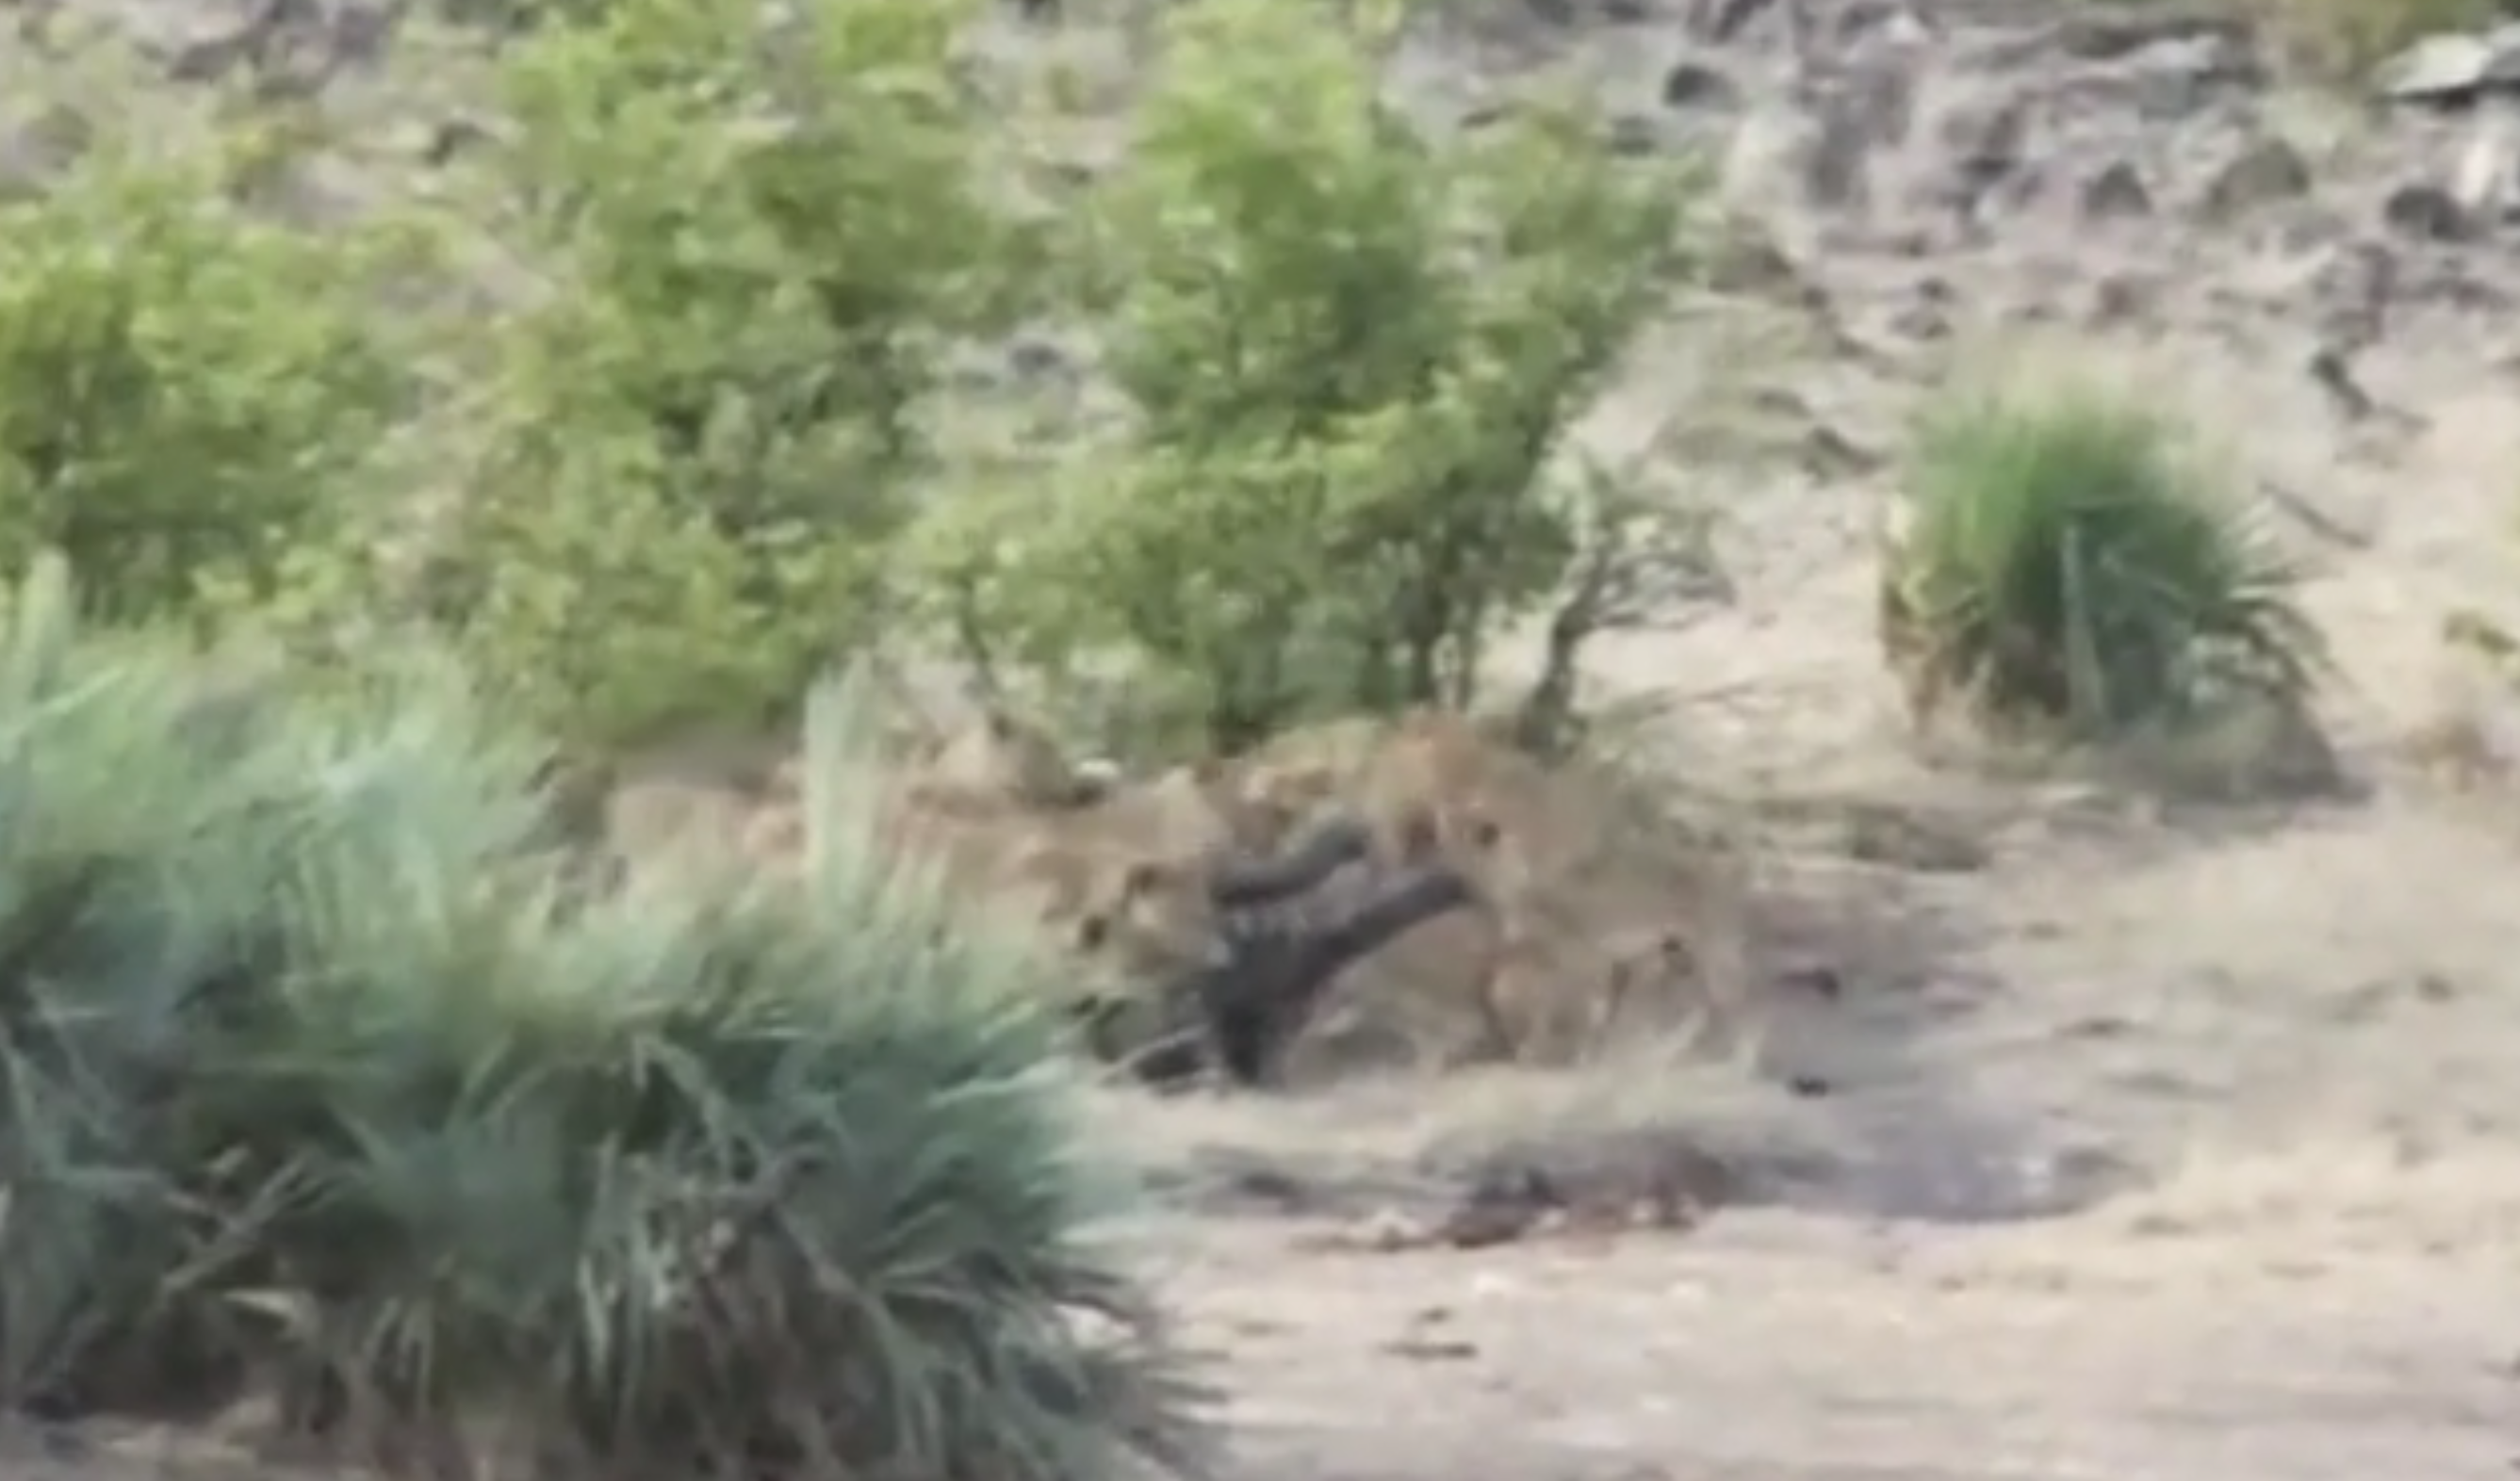 L’elefantino viene attaccato dai leoni: lo salvano i bufali [VIDEO]